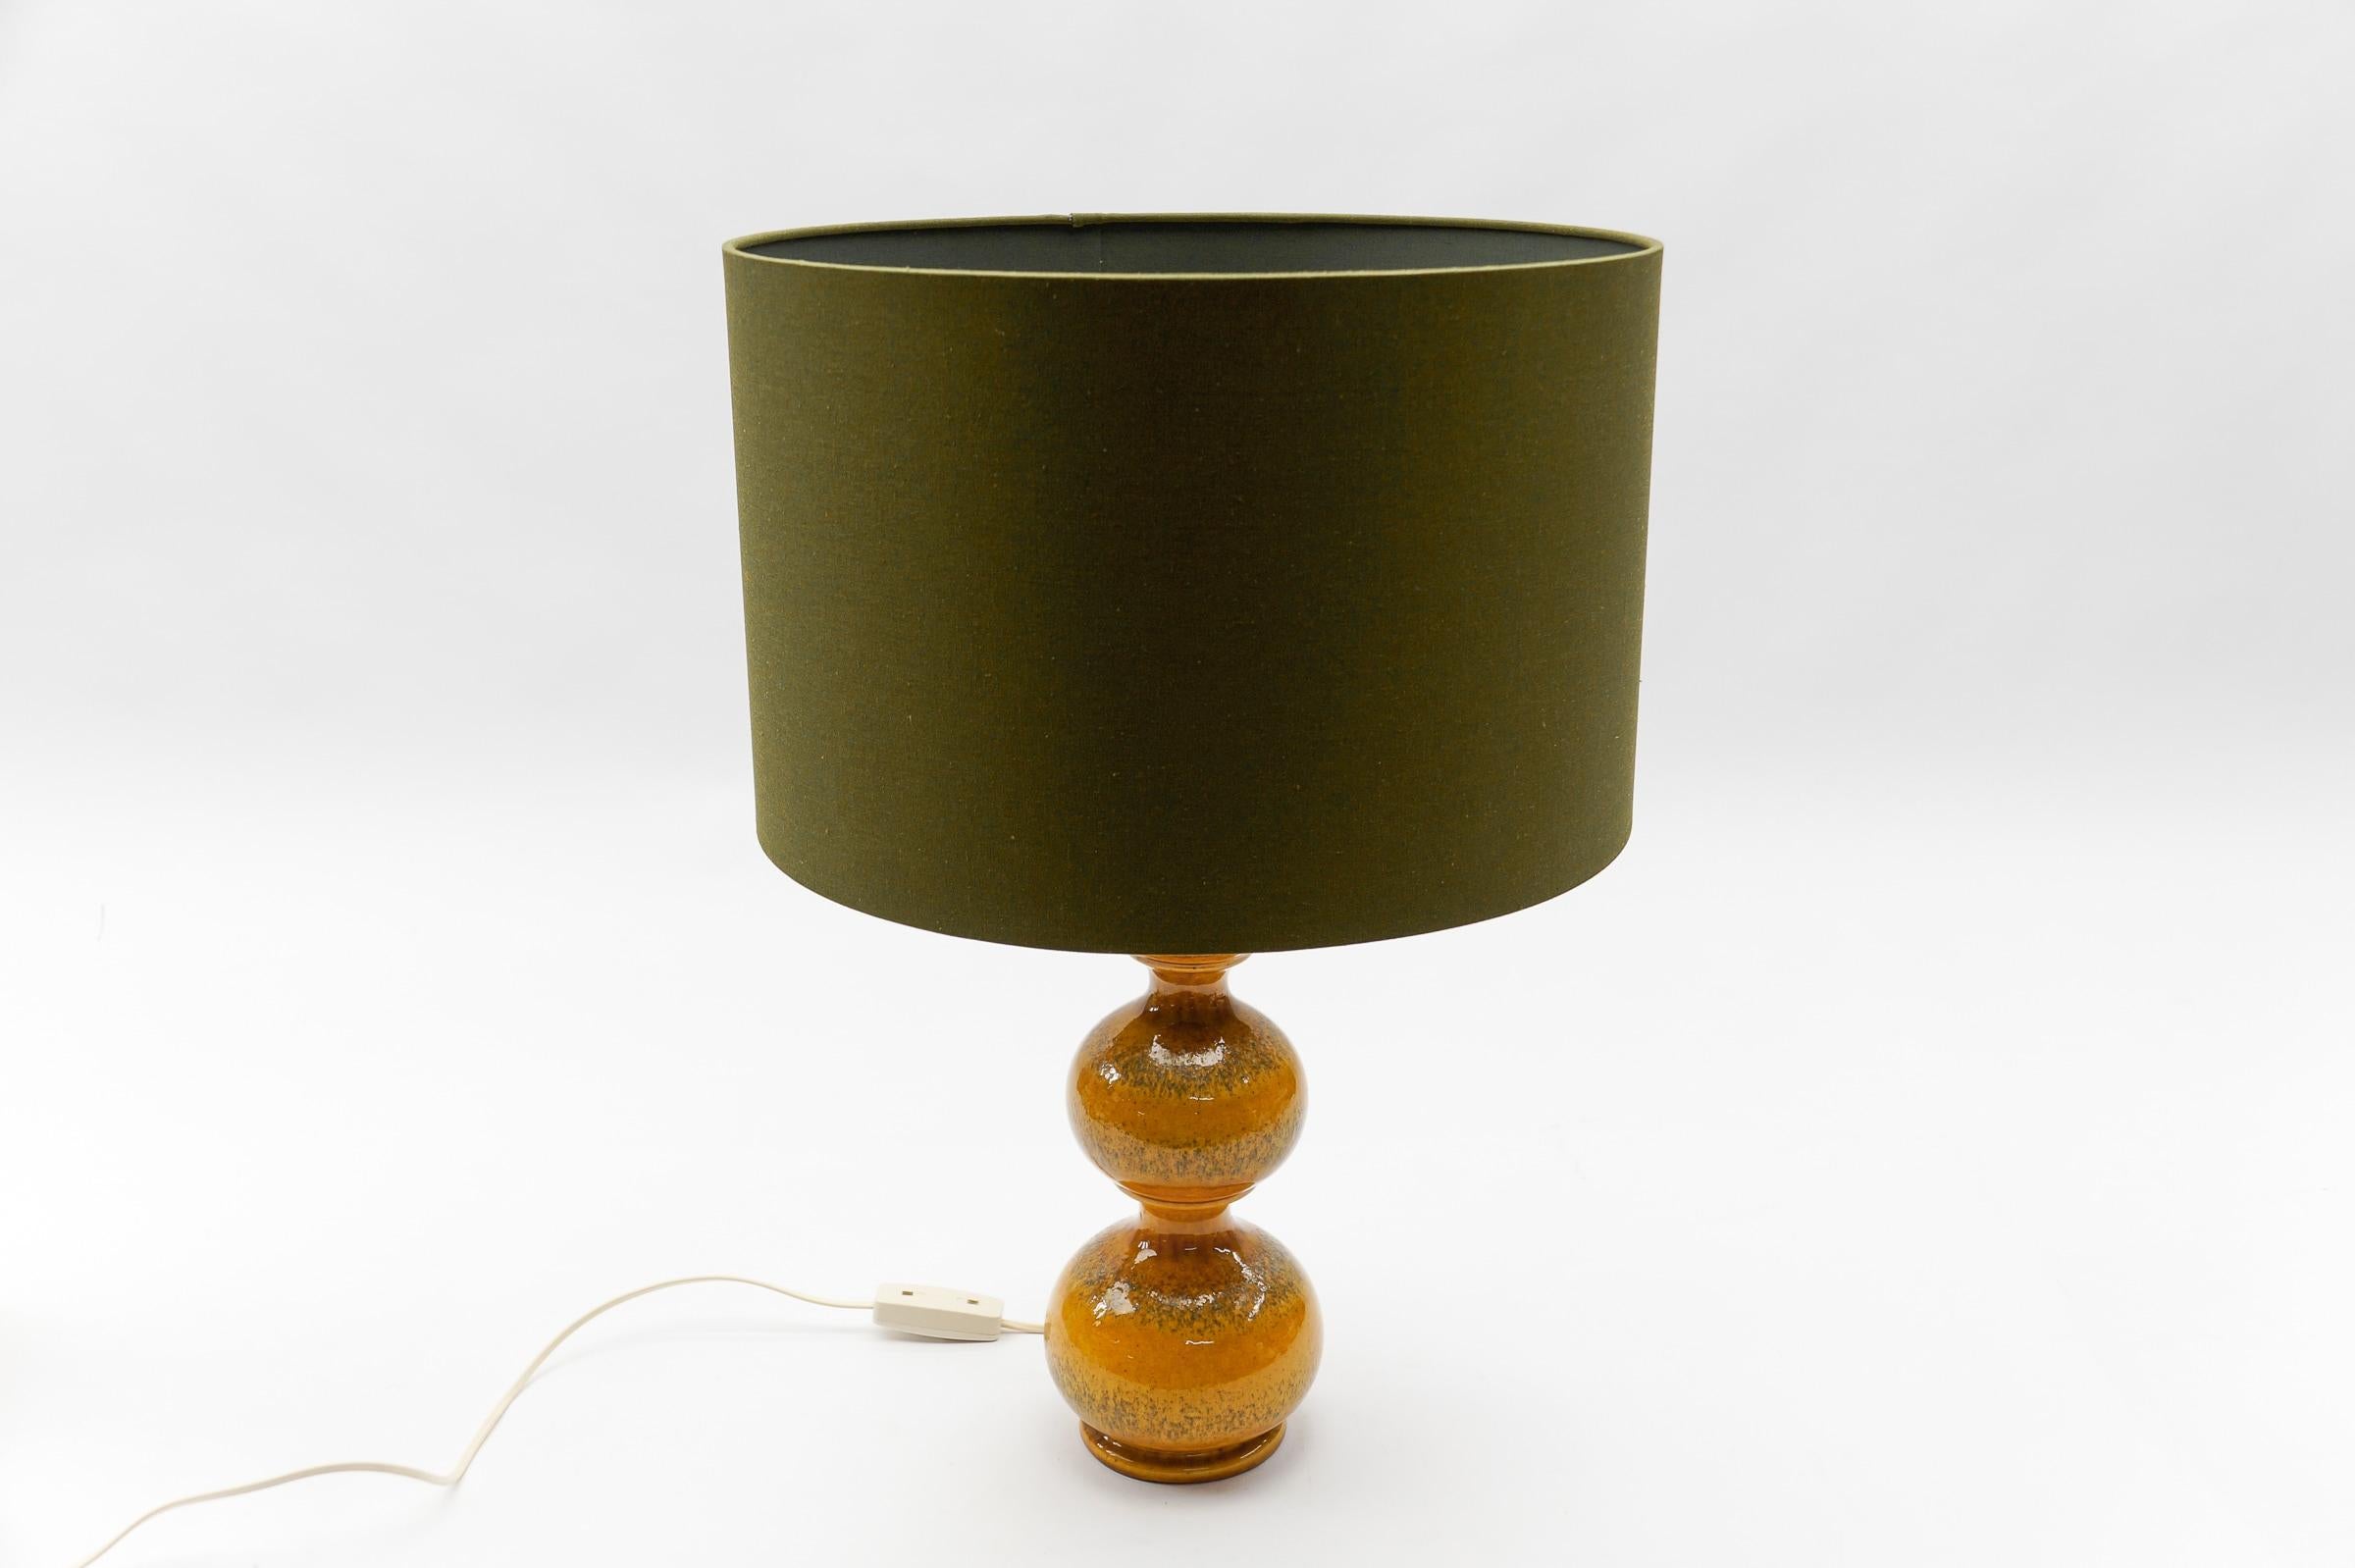 Very Rare Orange Ceramic Table Lamp Base from Kaiser Leuchten, Germany 1960s - For Sale 5